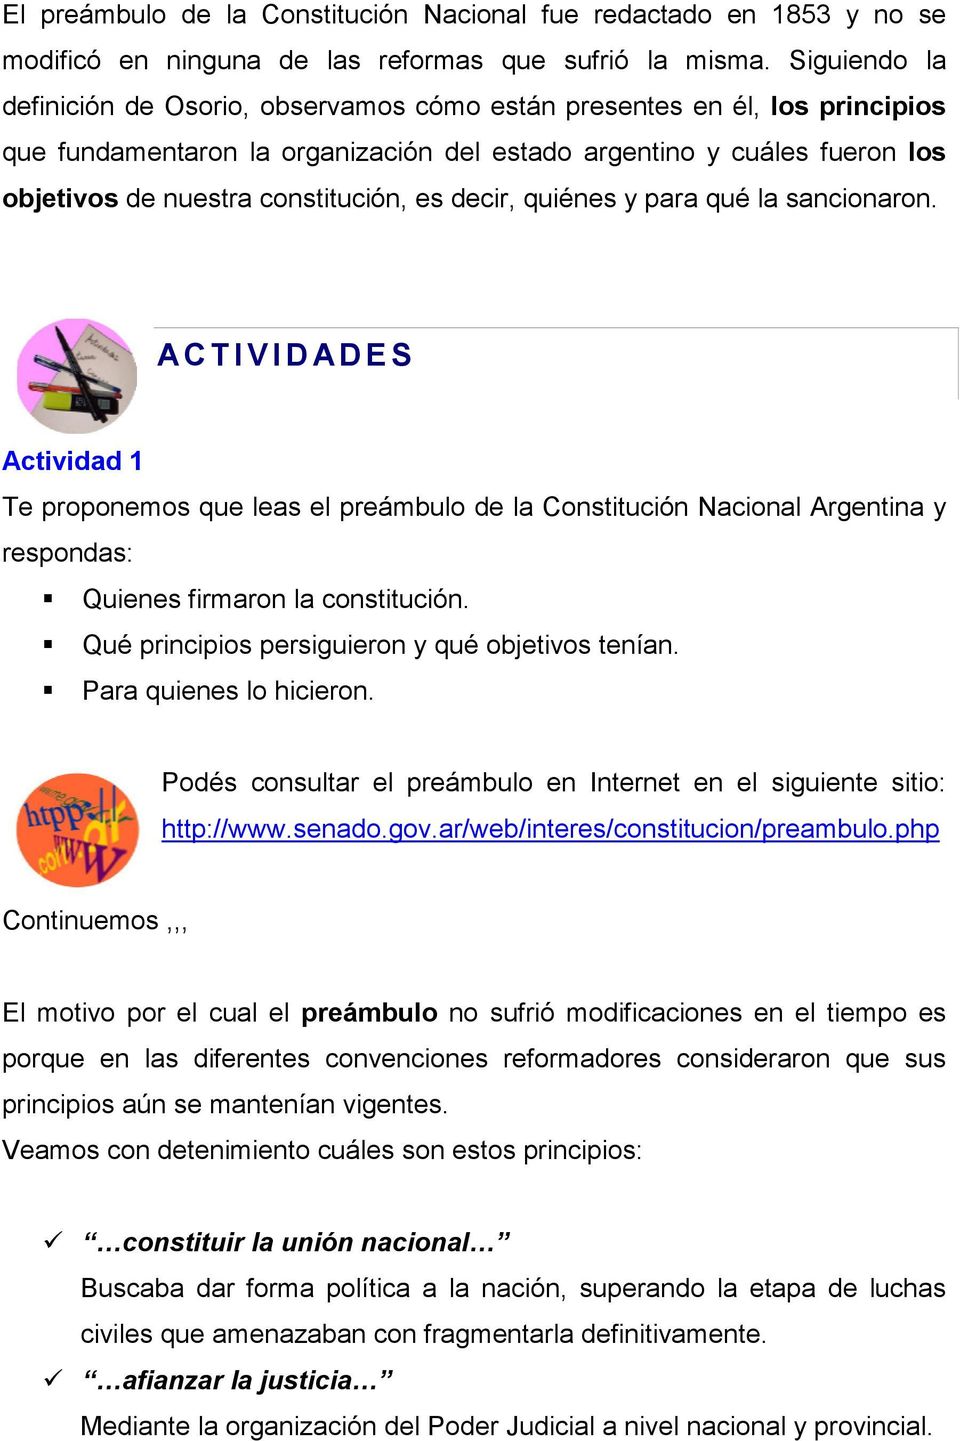 es decir, quiénes y para qué la sancionaron. ACTIVIDADES Actividad 1 Te proponemos que leas el preámbulo de la Constitución Nacional Argentina y respondas: Quienes firmaron la constitución.